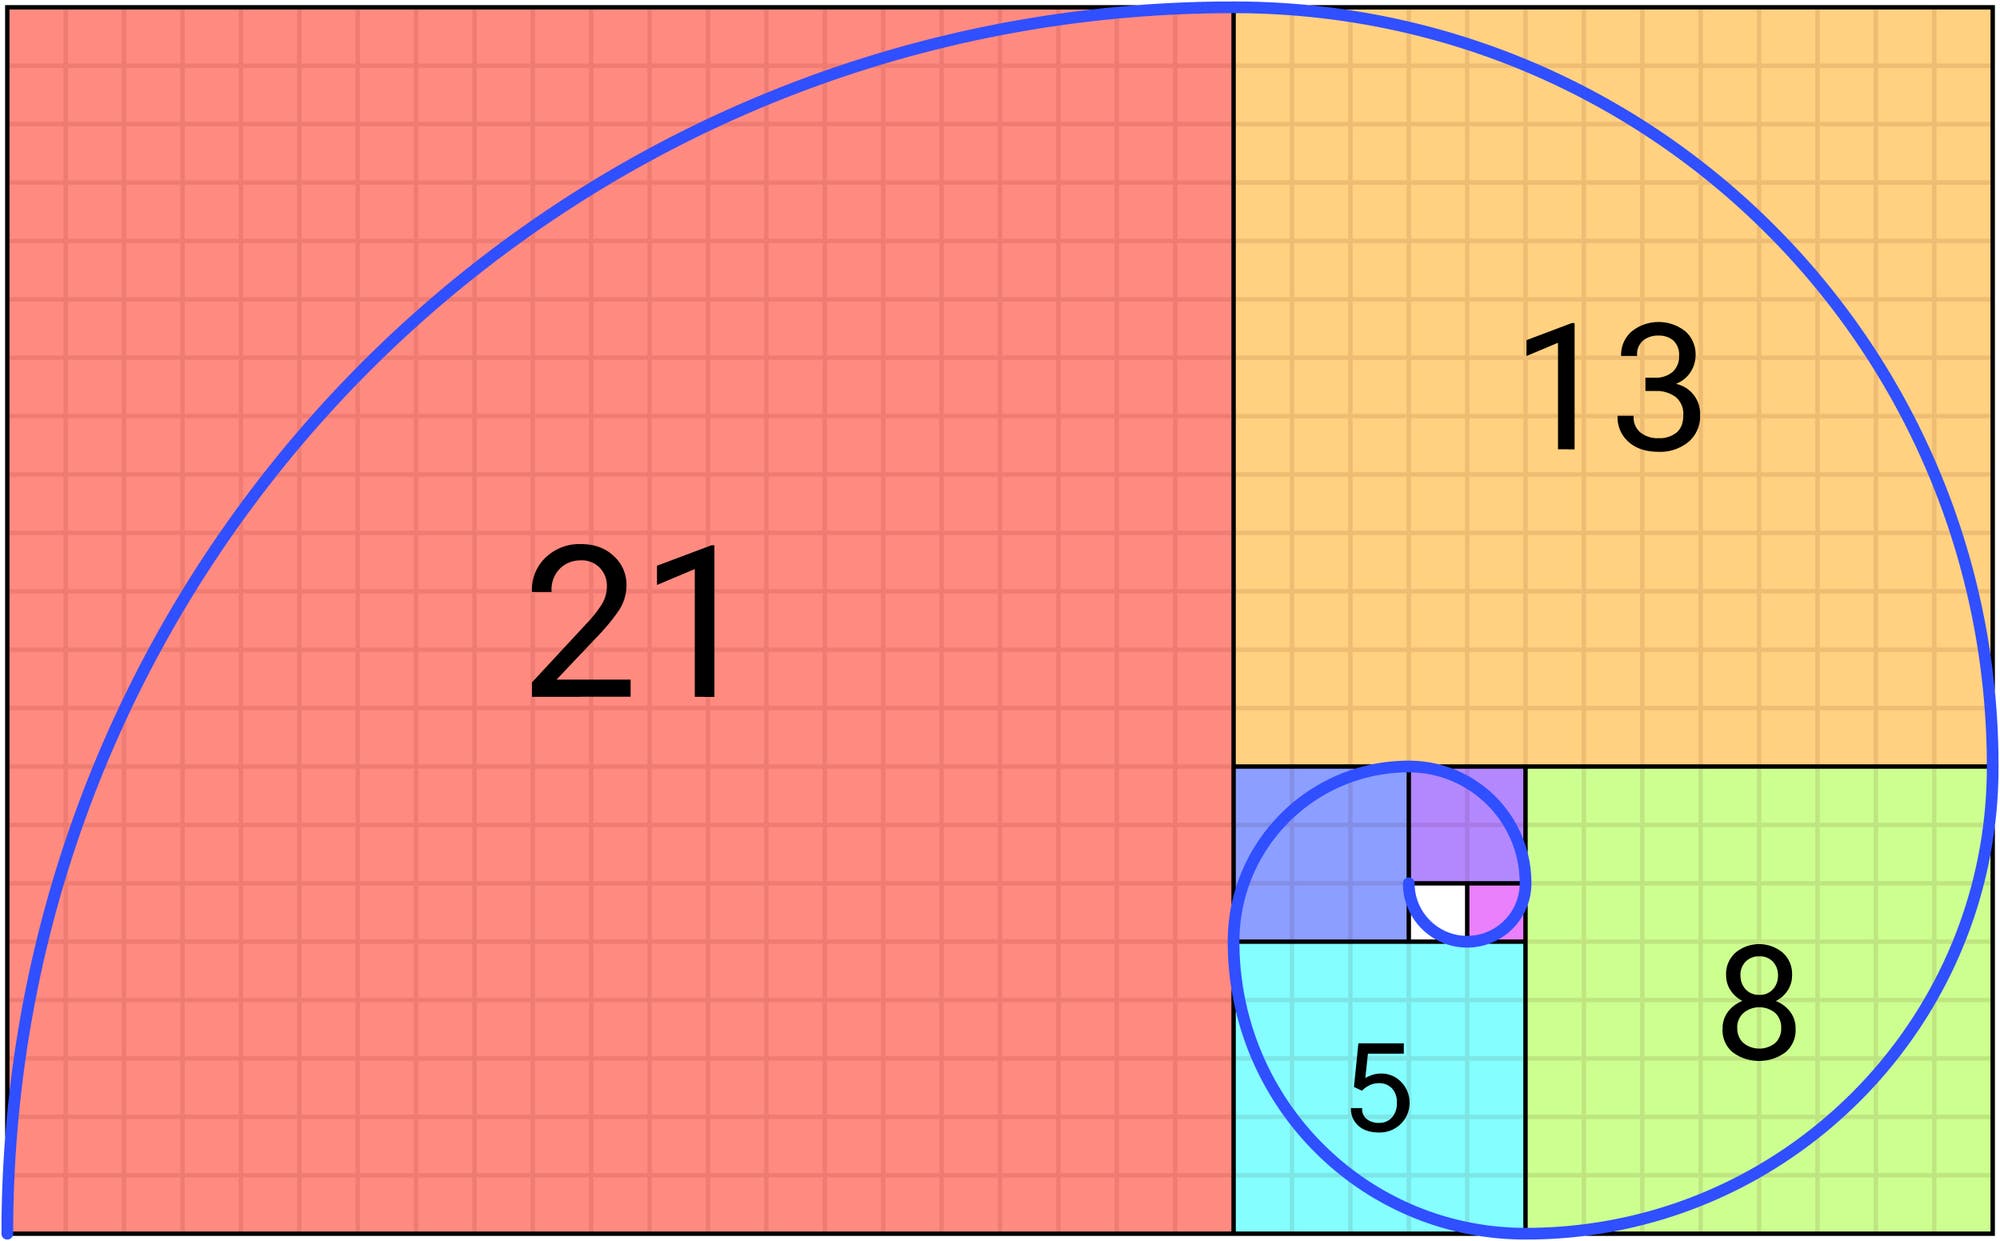 Spiral-ähnliche Kurve innerhalb des goldenen Rechtecks